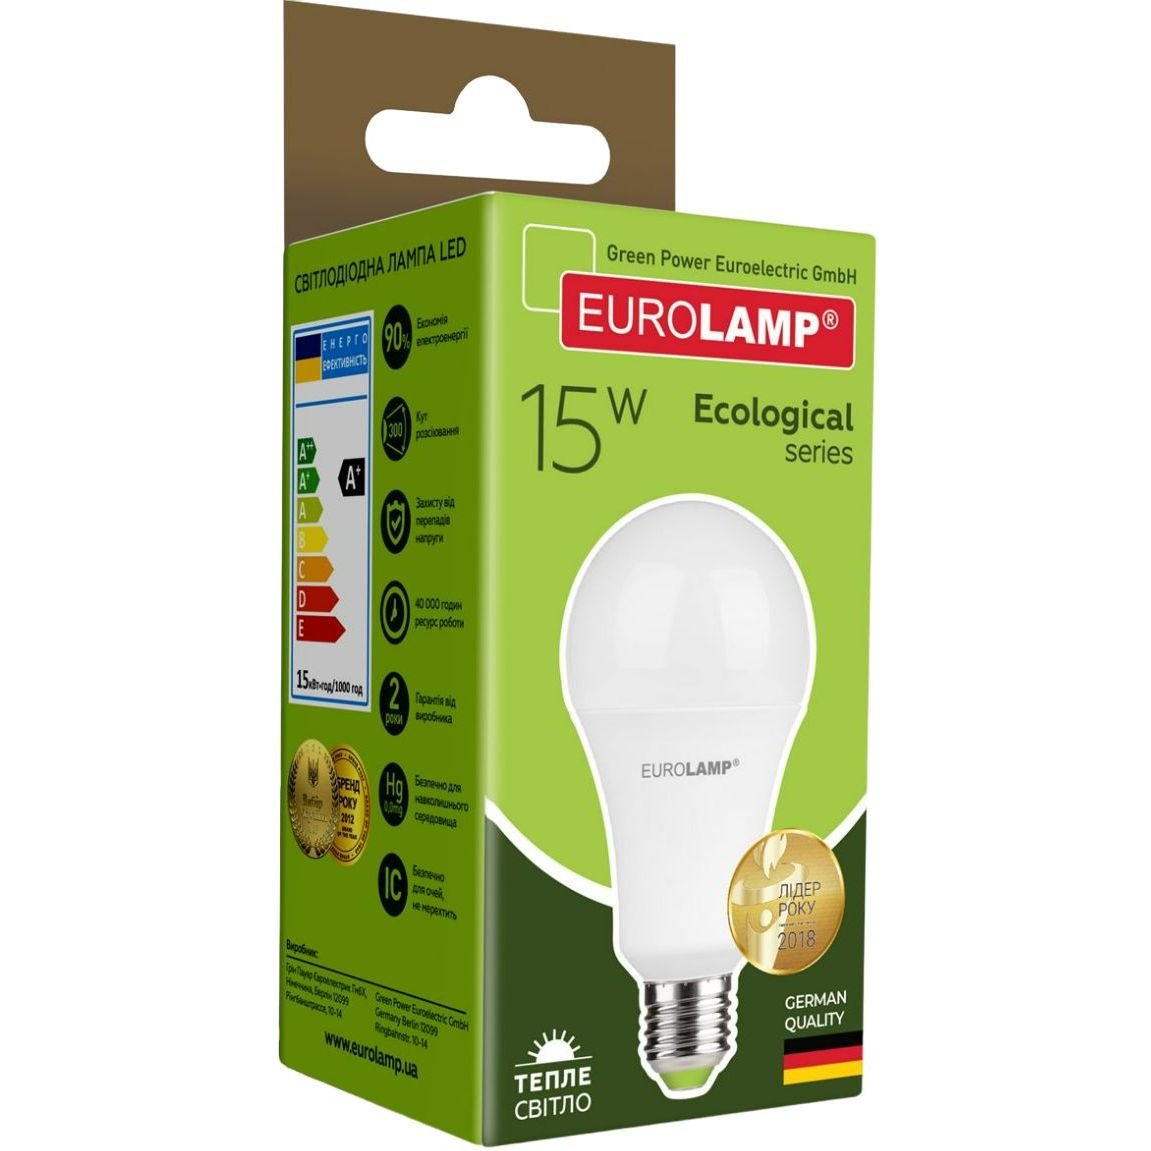 Светодиодная лампа Eurolamp LED Ecological Series, A70, 15W, E27, 3000K (50) (LED-A70-15272(P)) - фото 3